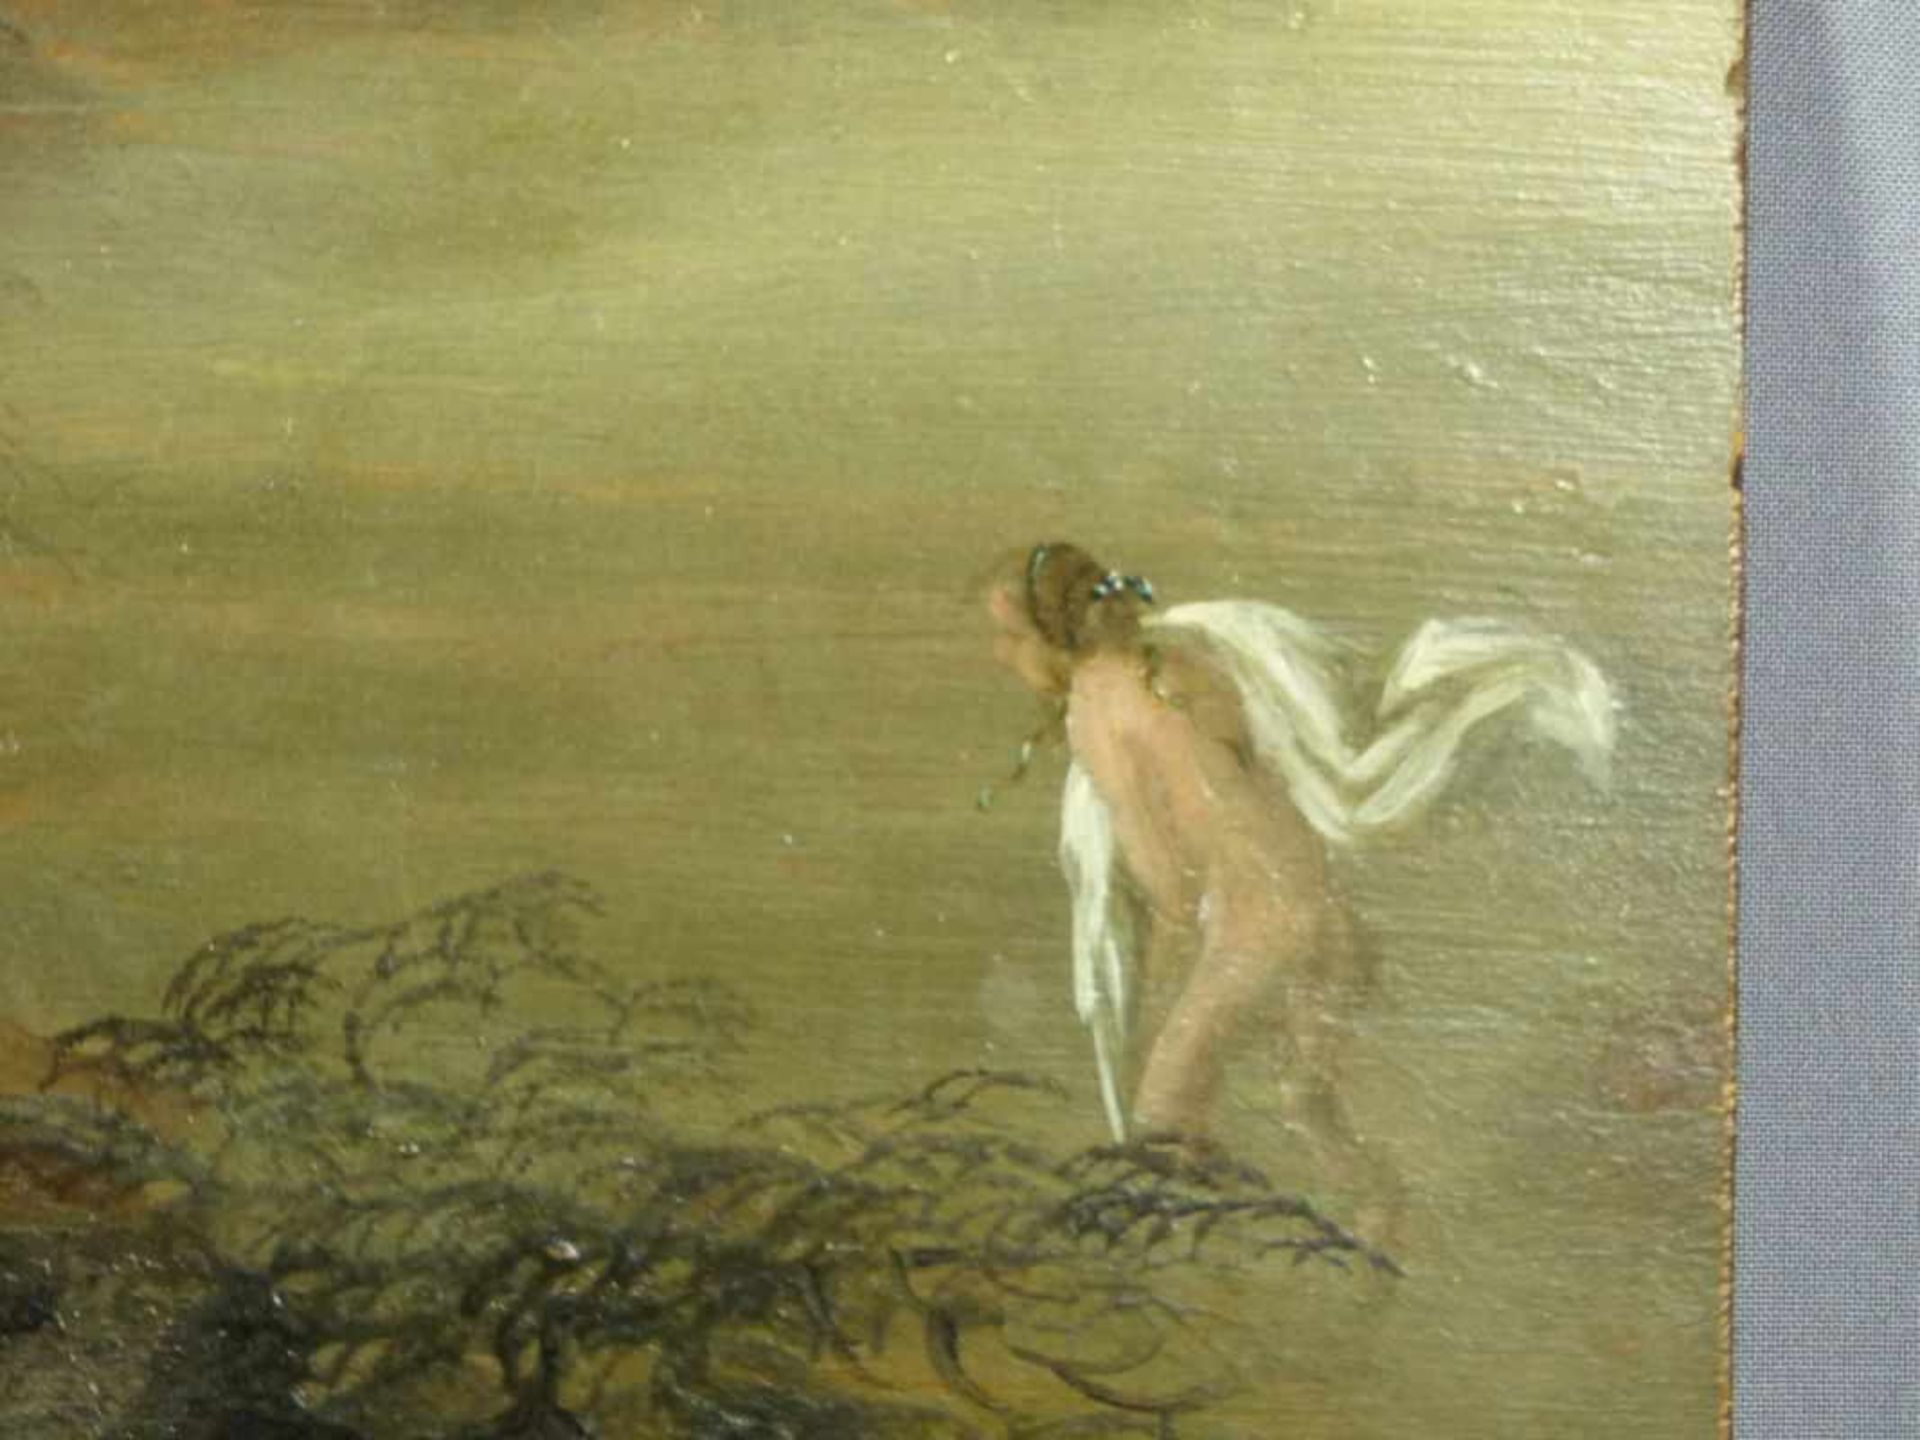 Mythologische SzeneUnbekannter Künstler d. 18. Jh.Skizzenhafte Darstellung zweier Figuren am Ufer, - Bild 2 aus 4